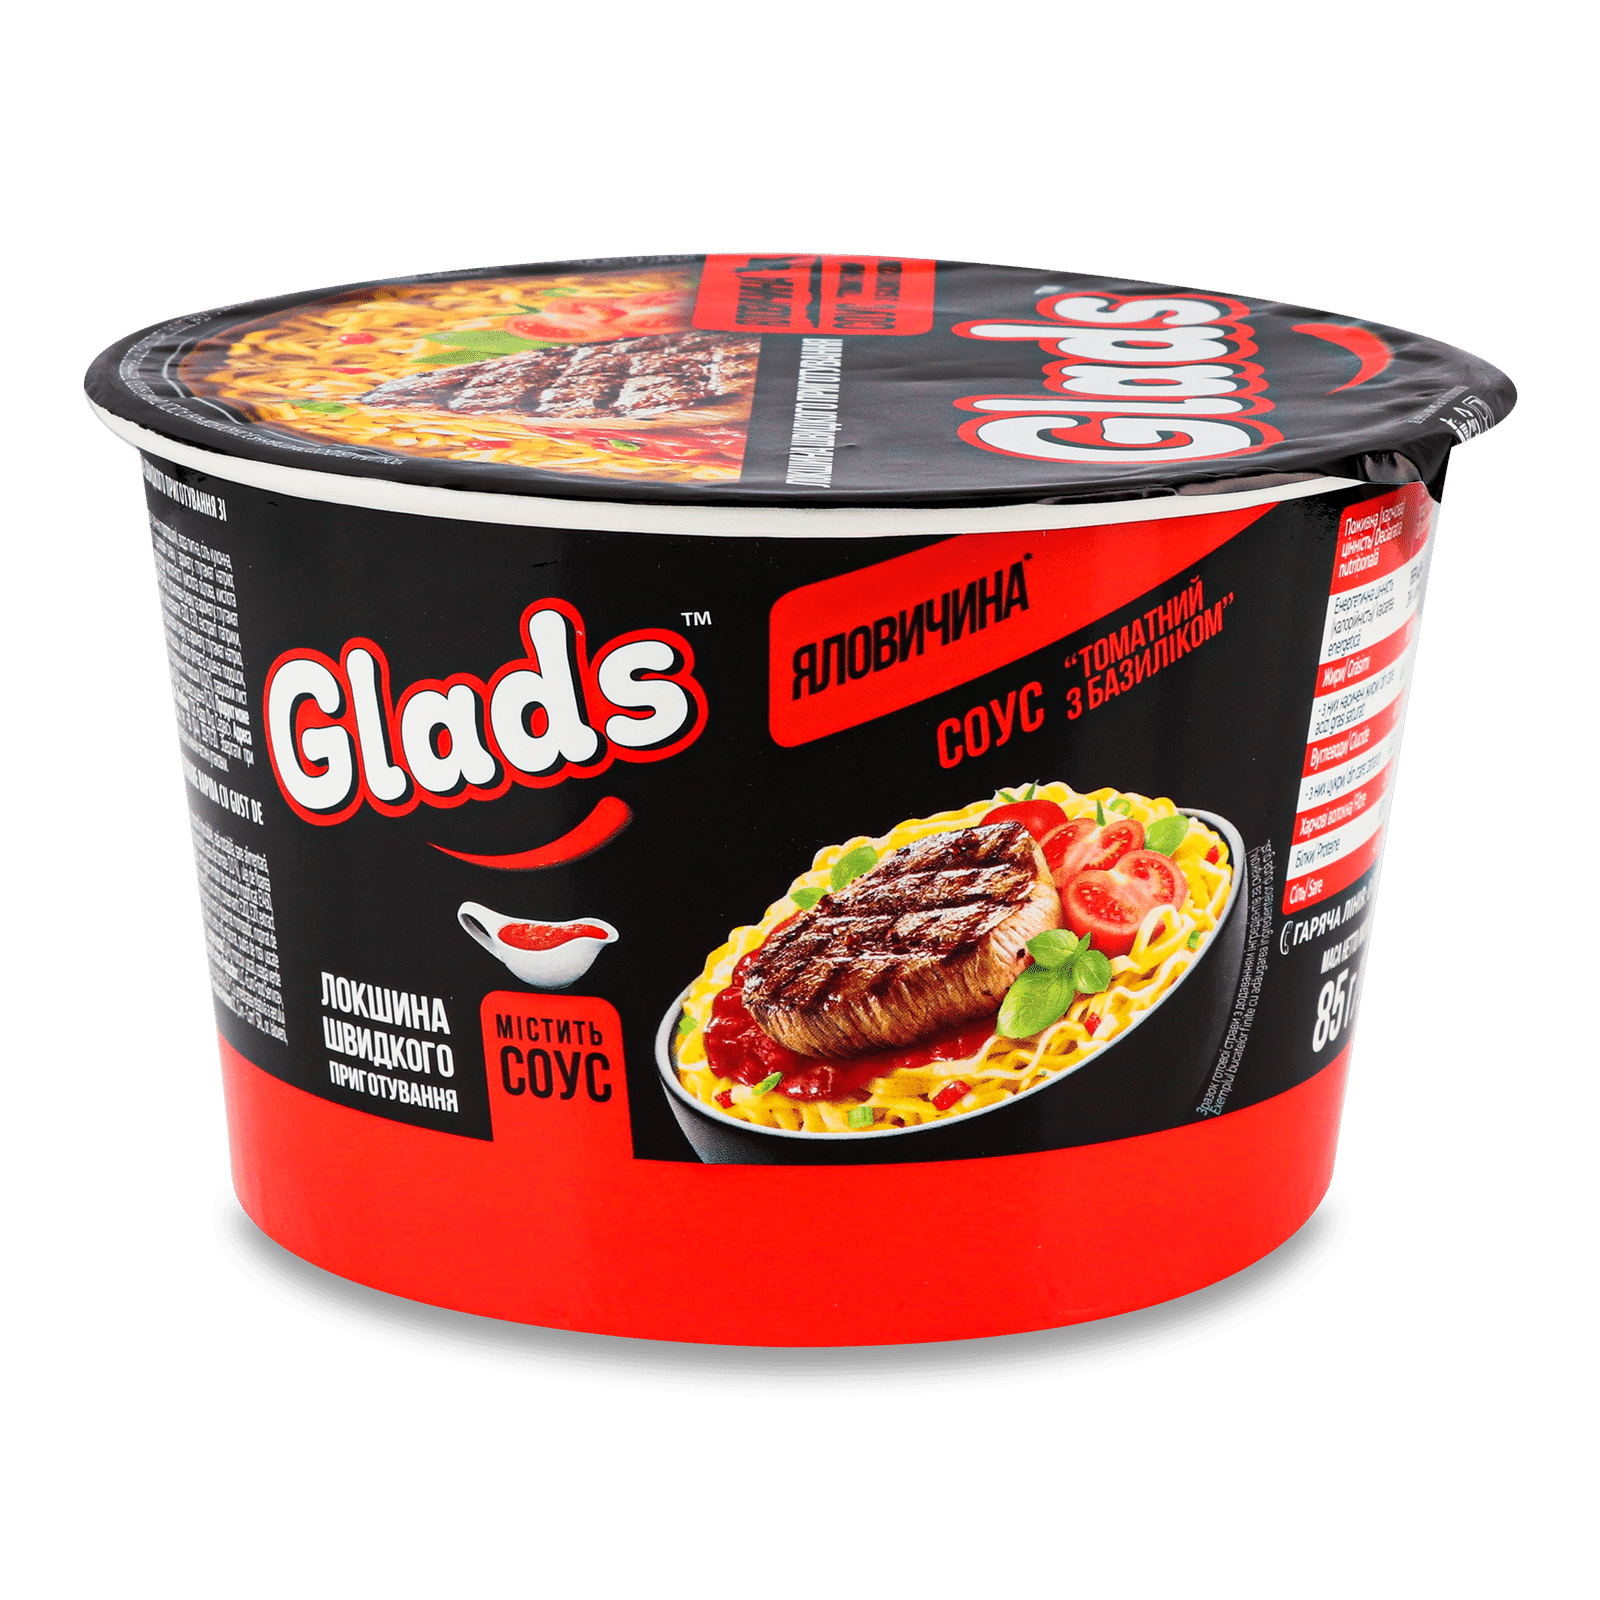 Локшина швидкого приготування Glads Яловичина та томатний соус з базиліком - 1